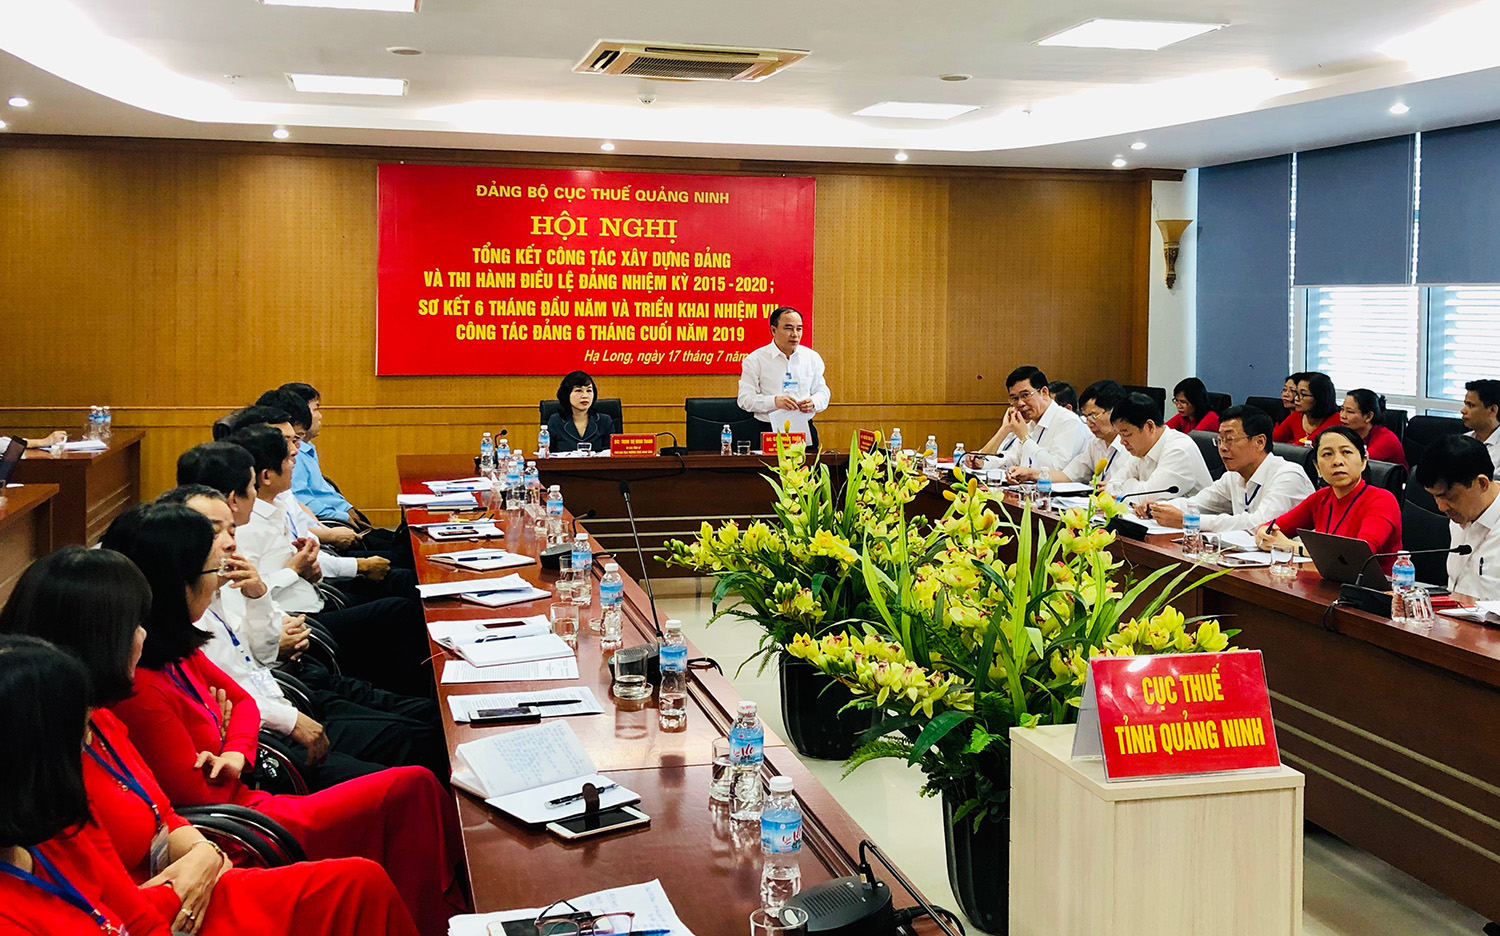 Đảng bộ Cục Thuế Quảng Ninh tổ chức Hội nghị trực tuyến tổng kết công tác xây dựng Đảng và thi hành điều lệ Đảng nhiệm kỳ 2015-2020;